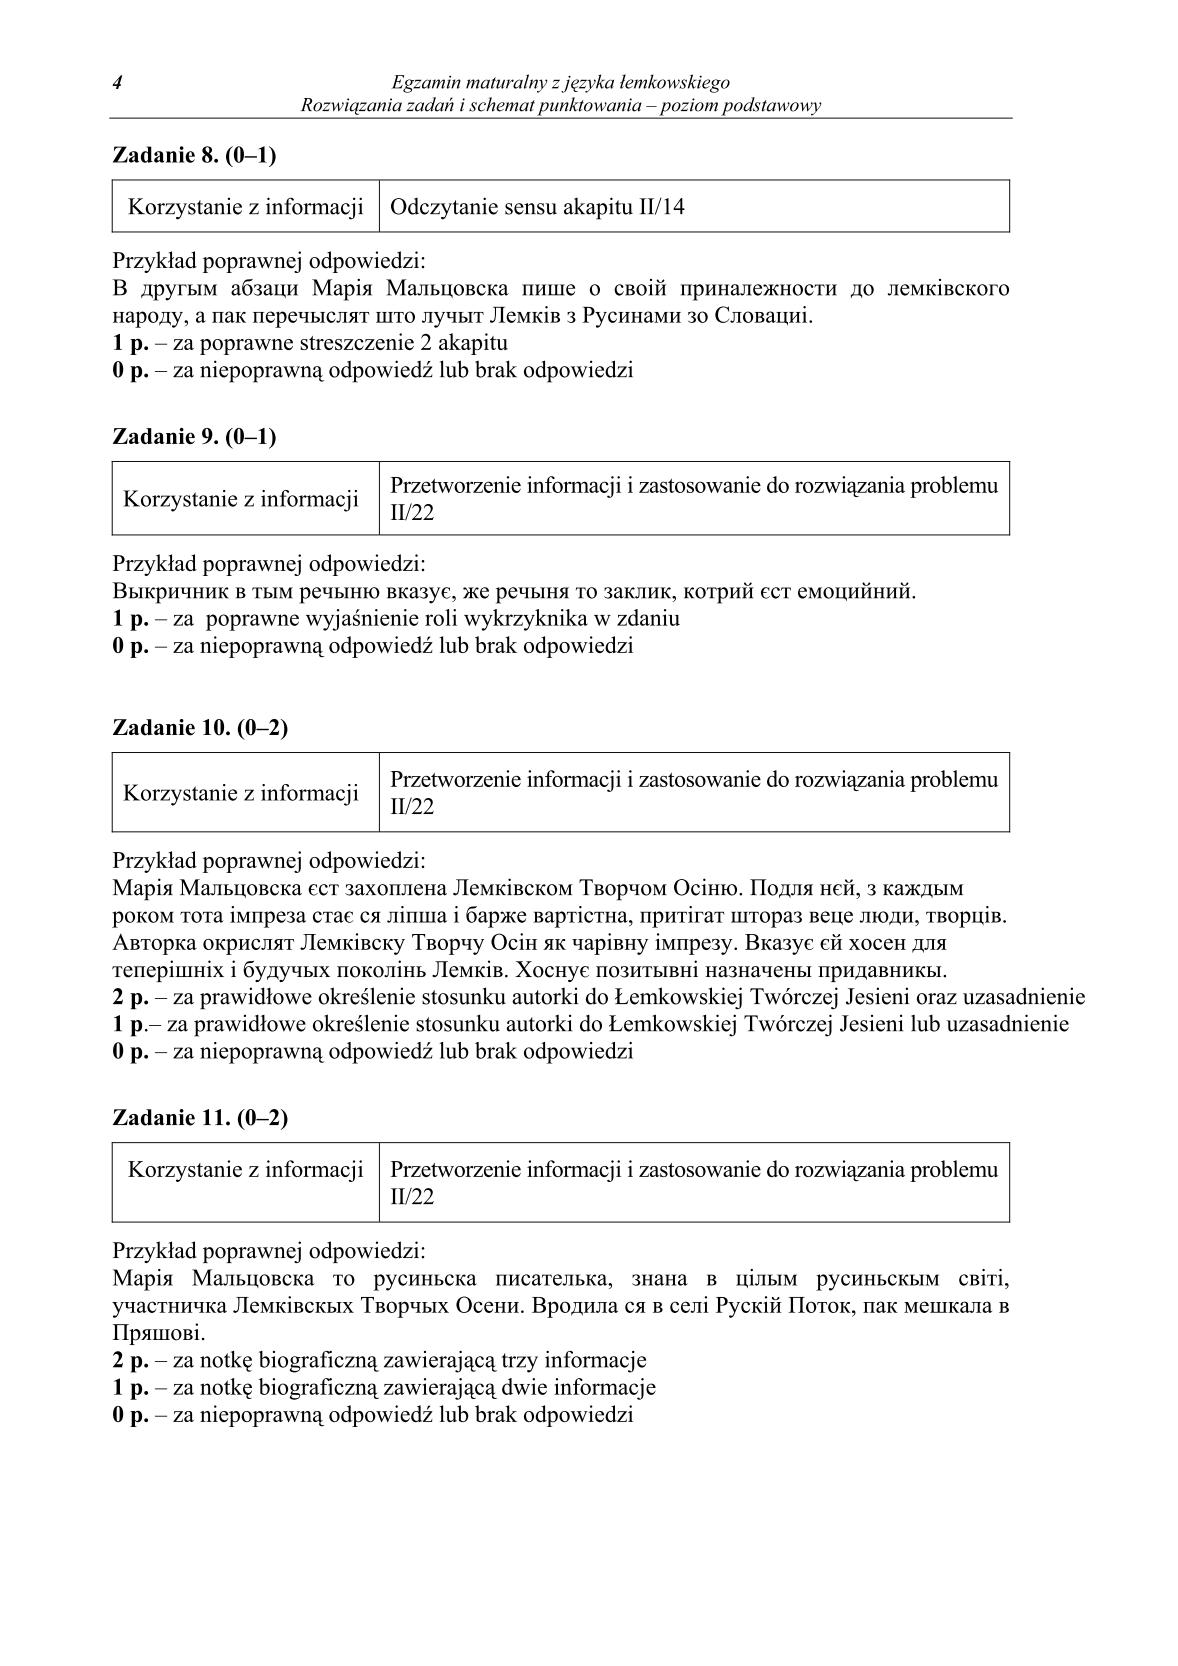 odpowiedzi-jezyk-lemkowski-poziom-podstawowy-matura-2014-str.4